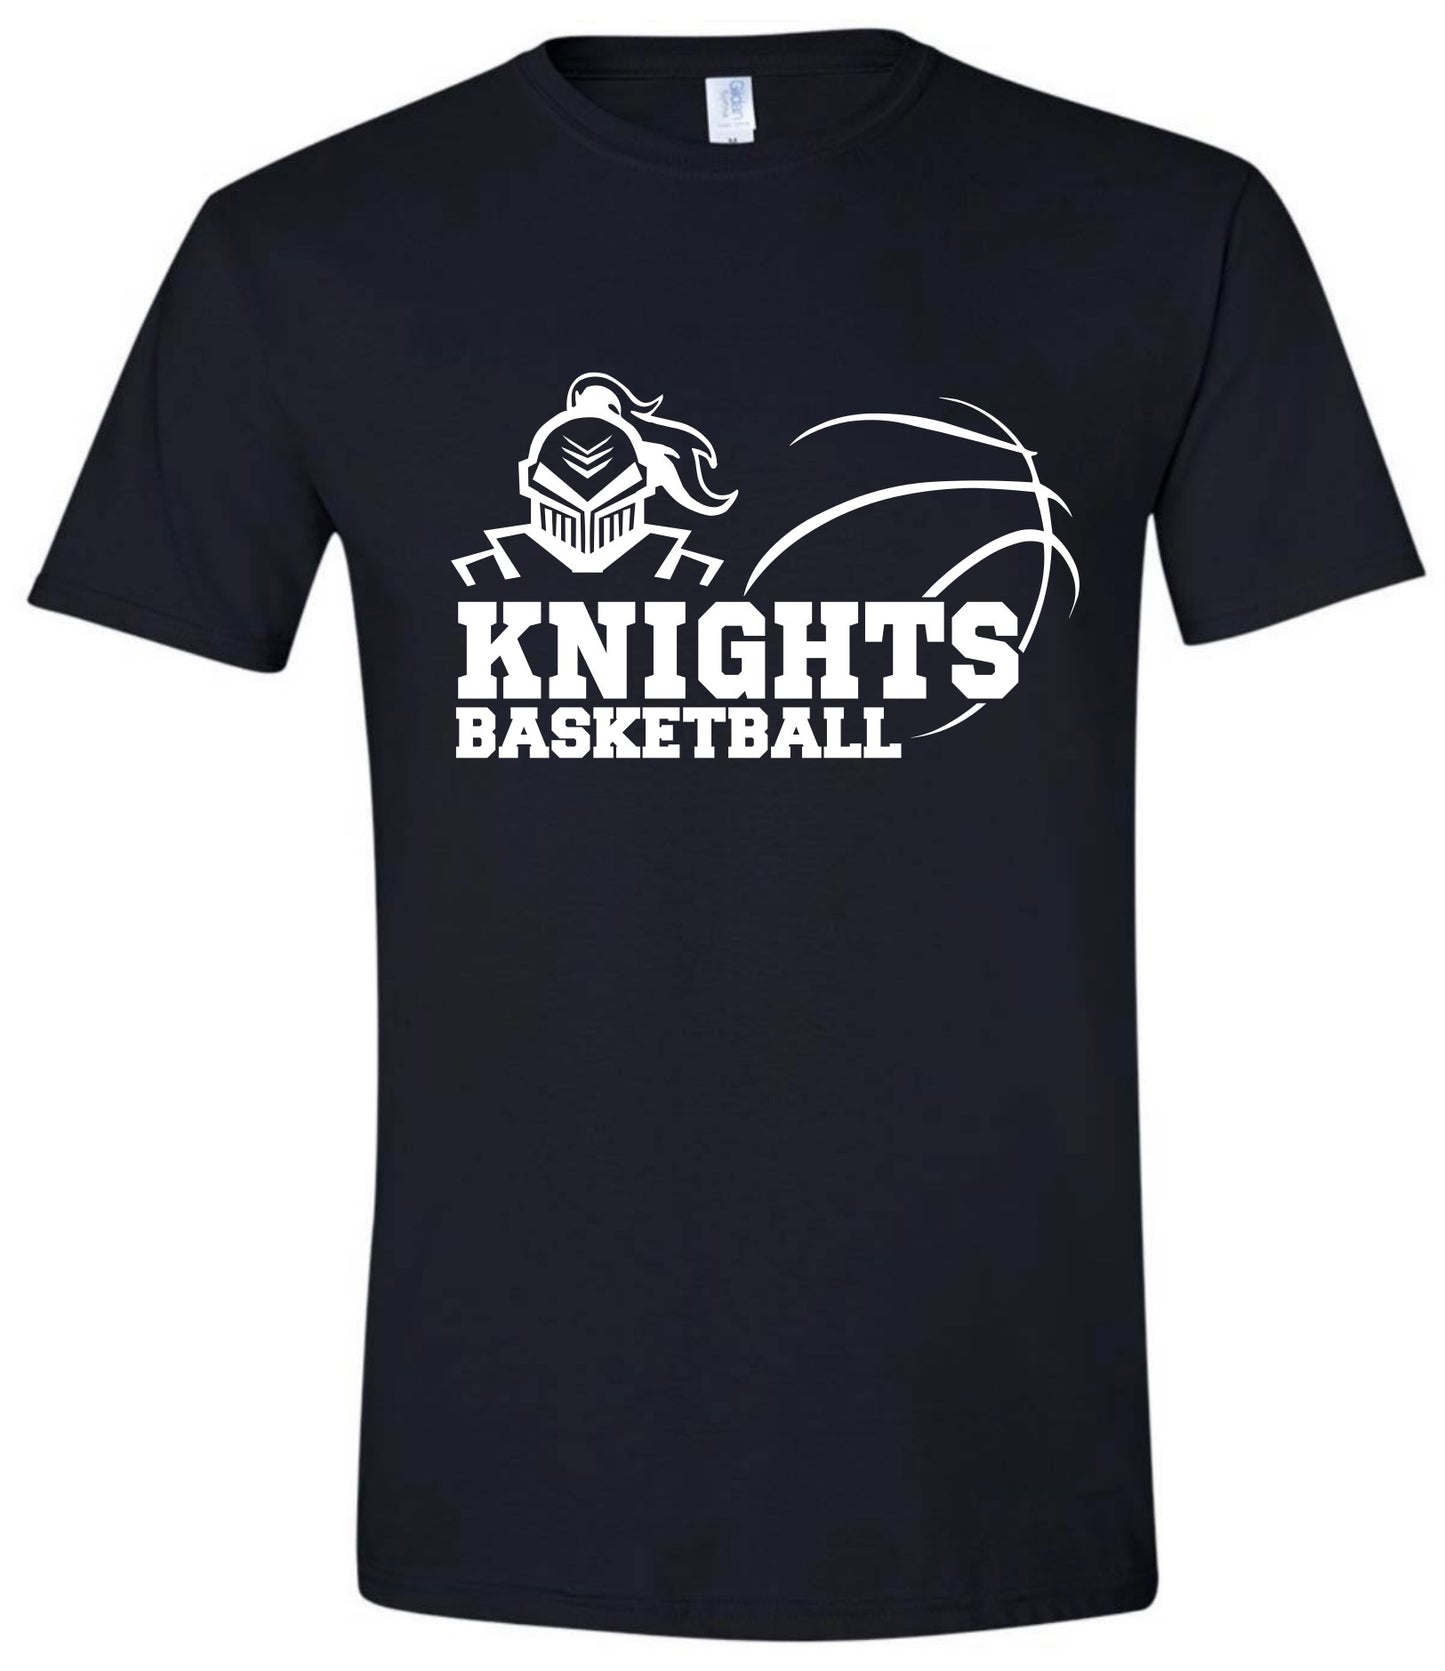 Knights Abstract Basketball Tshirt